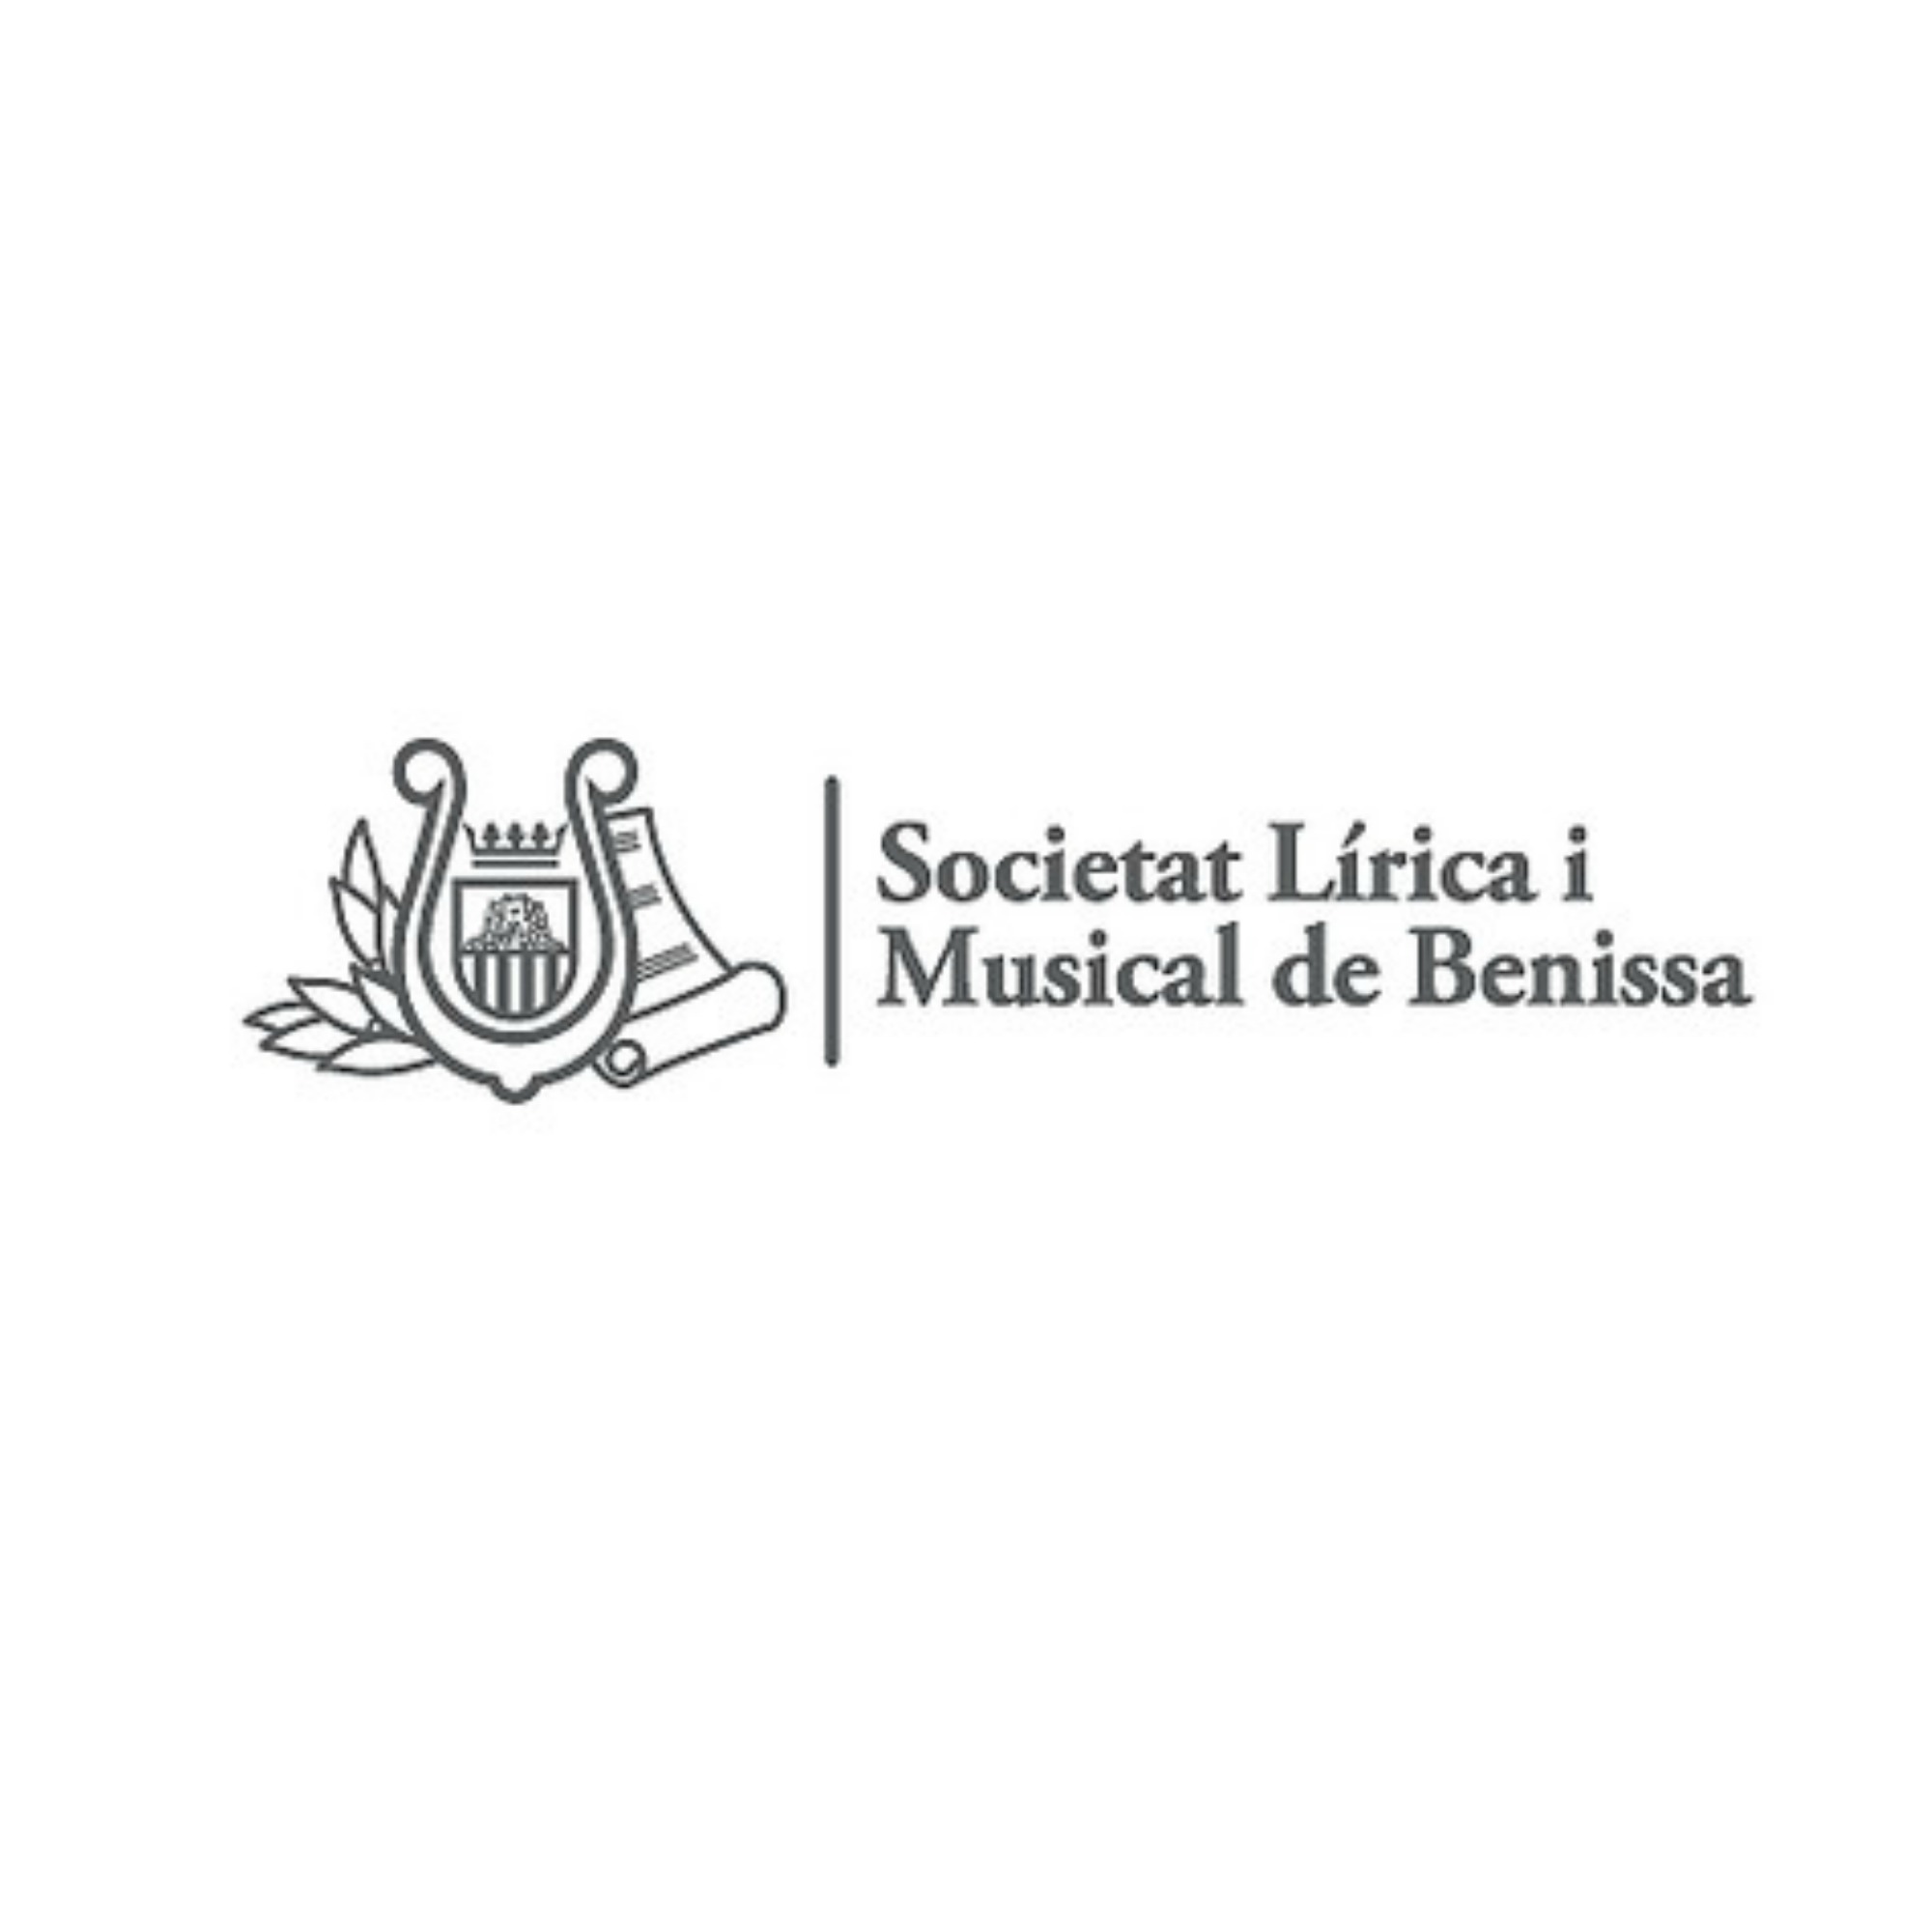 Sociedad Lírica i Musical de Benissa